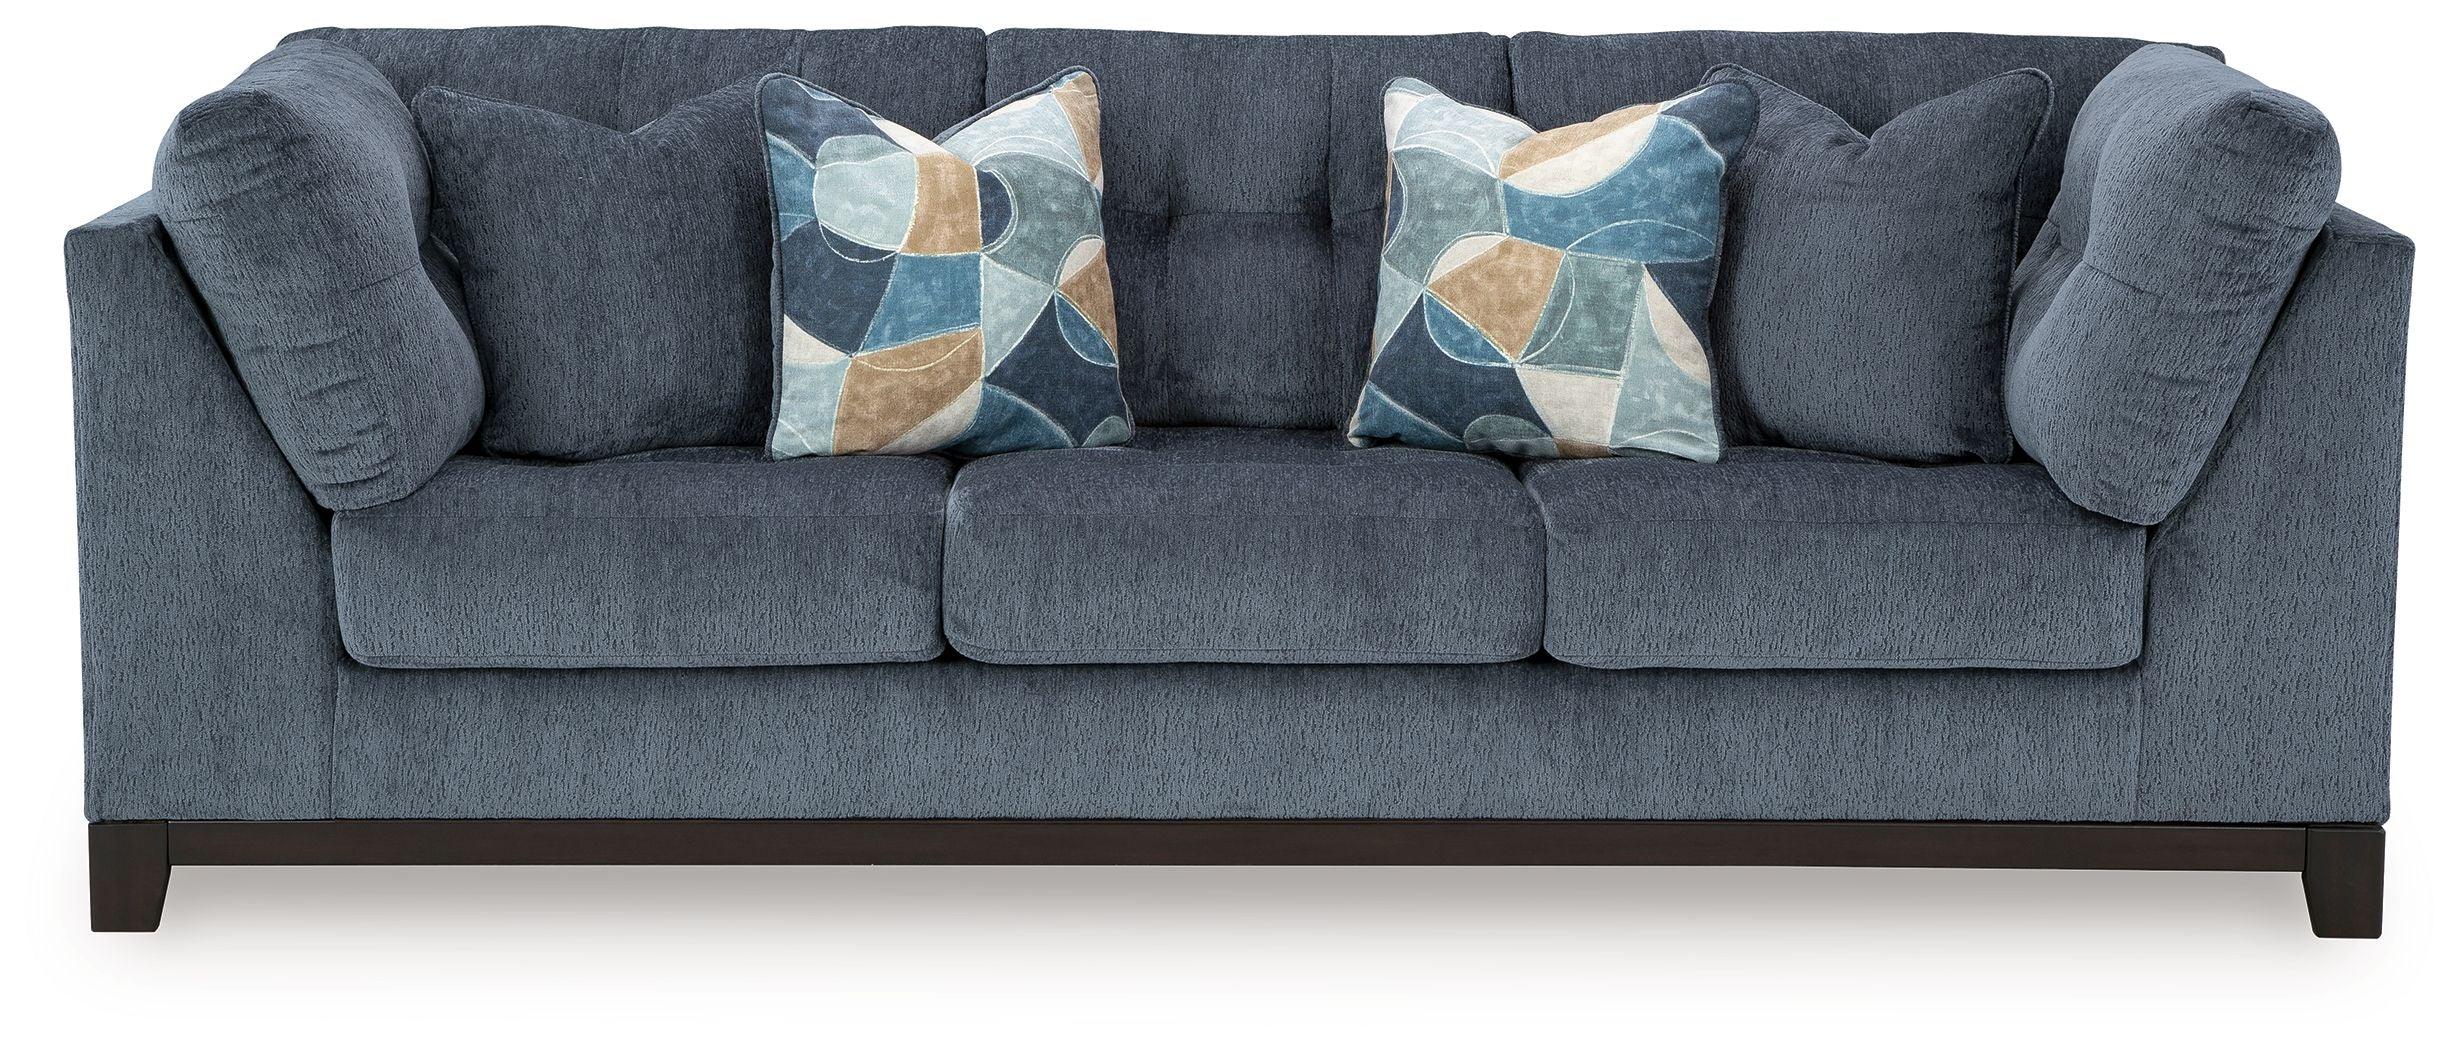 Benchcraft® - Maxon Place - Sofa - 5th Avenue Furniture